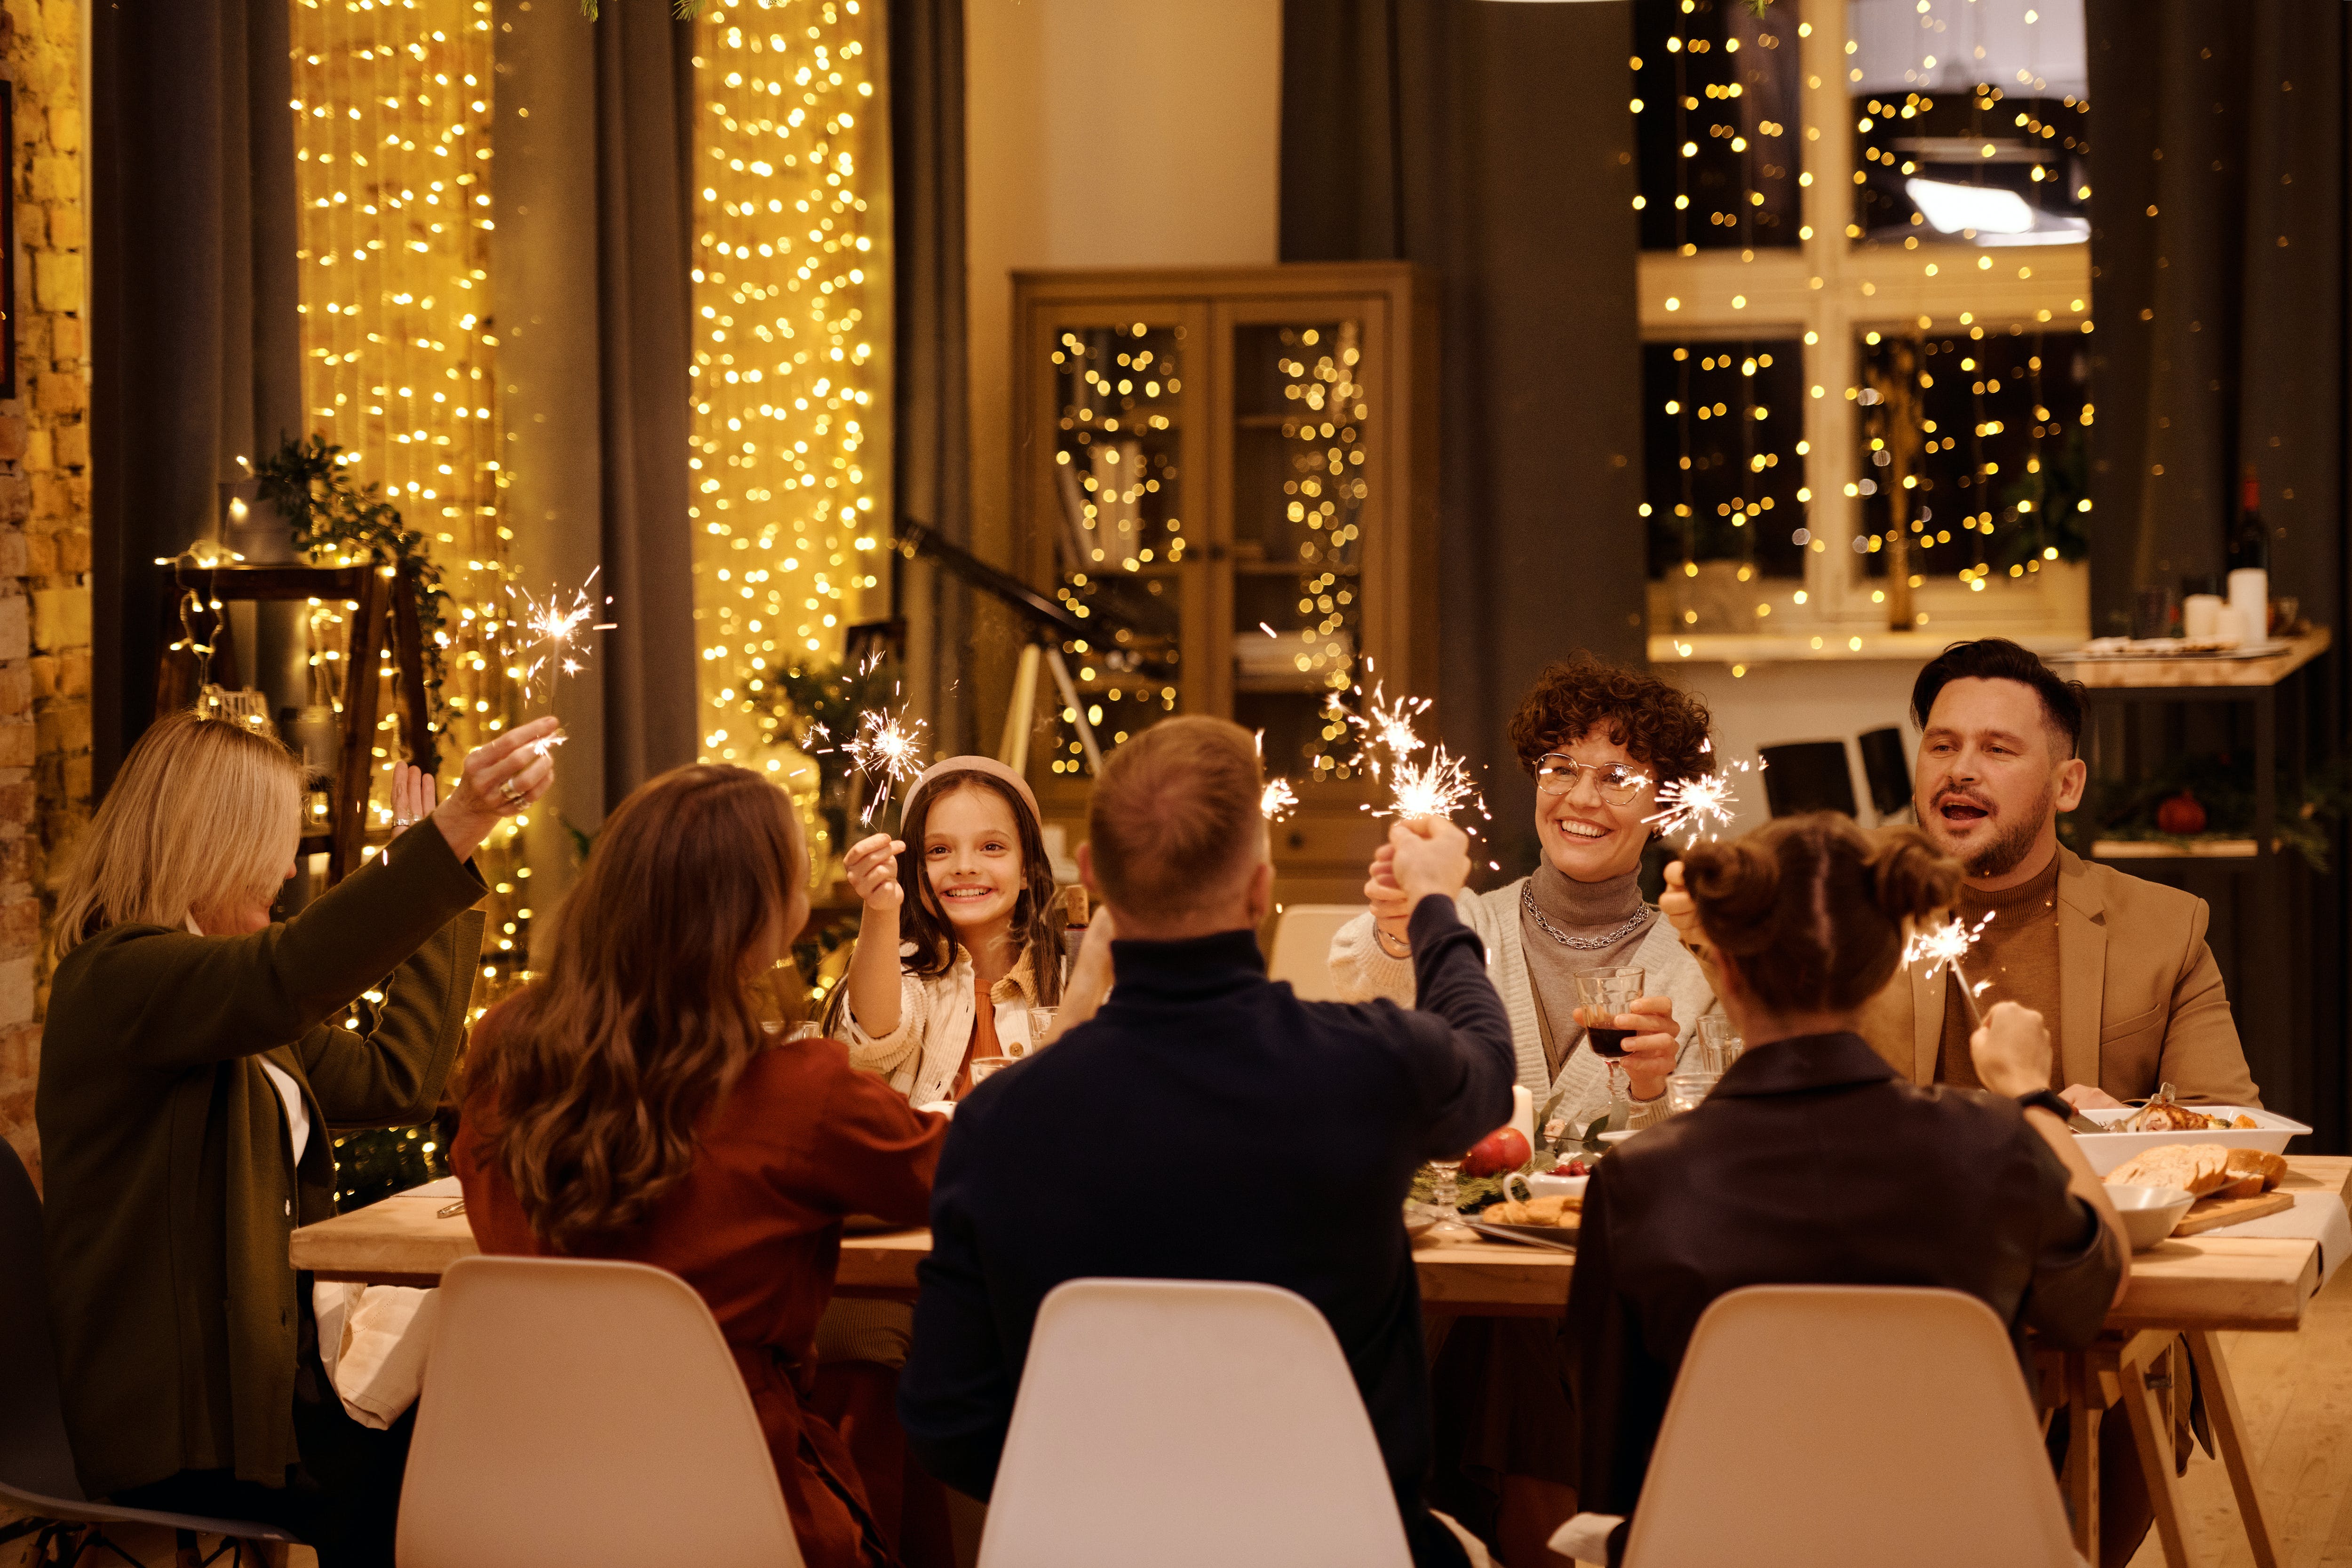 Une famille qui prend son repas de Noël ensemble | Source : Pexels